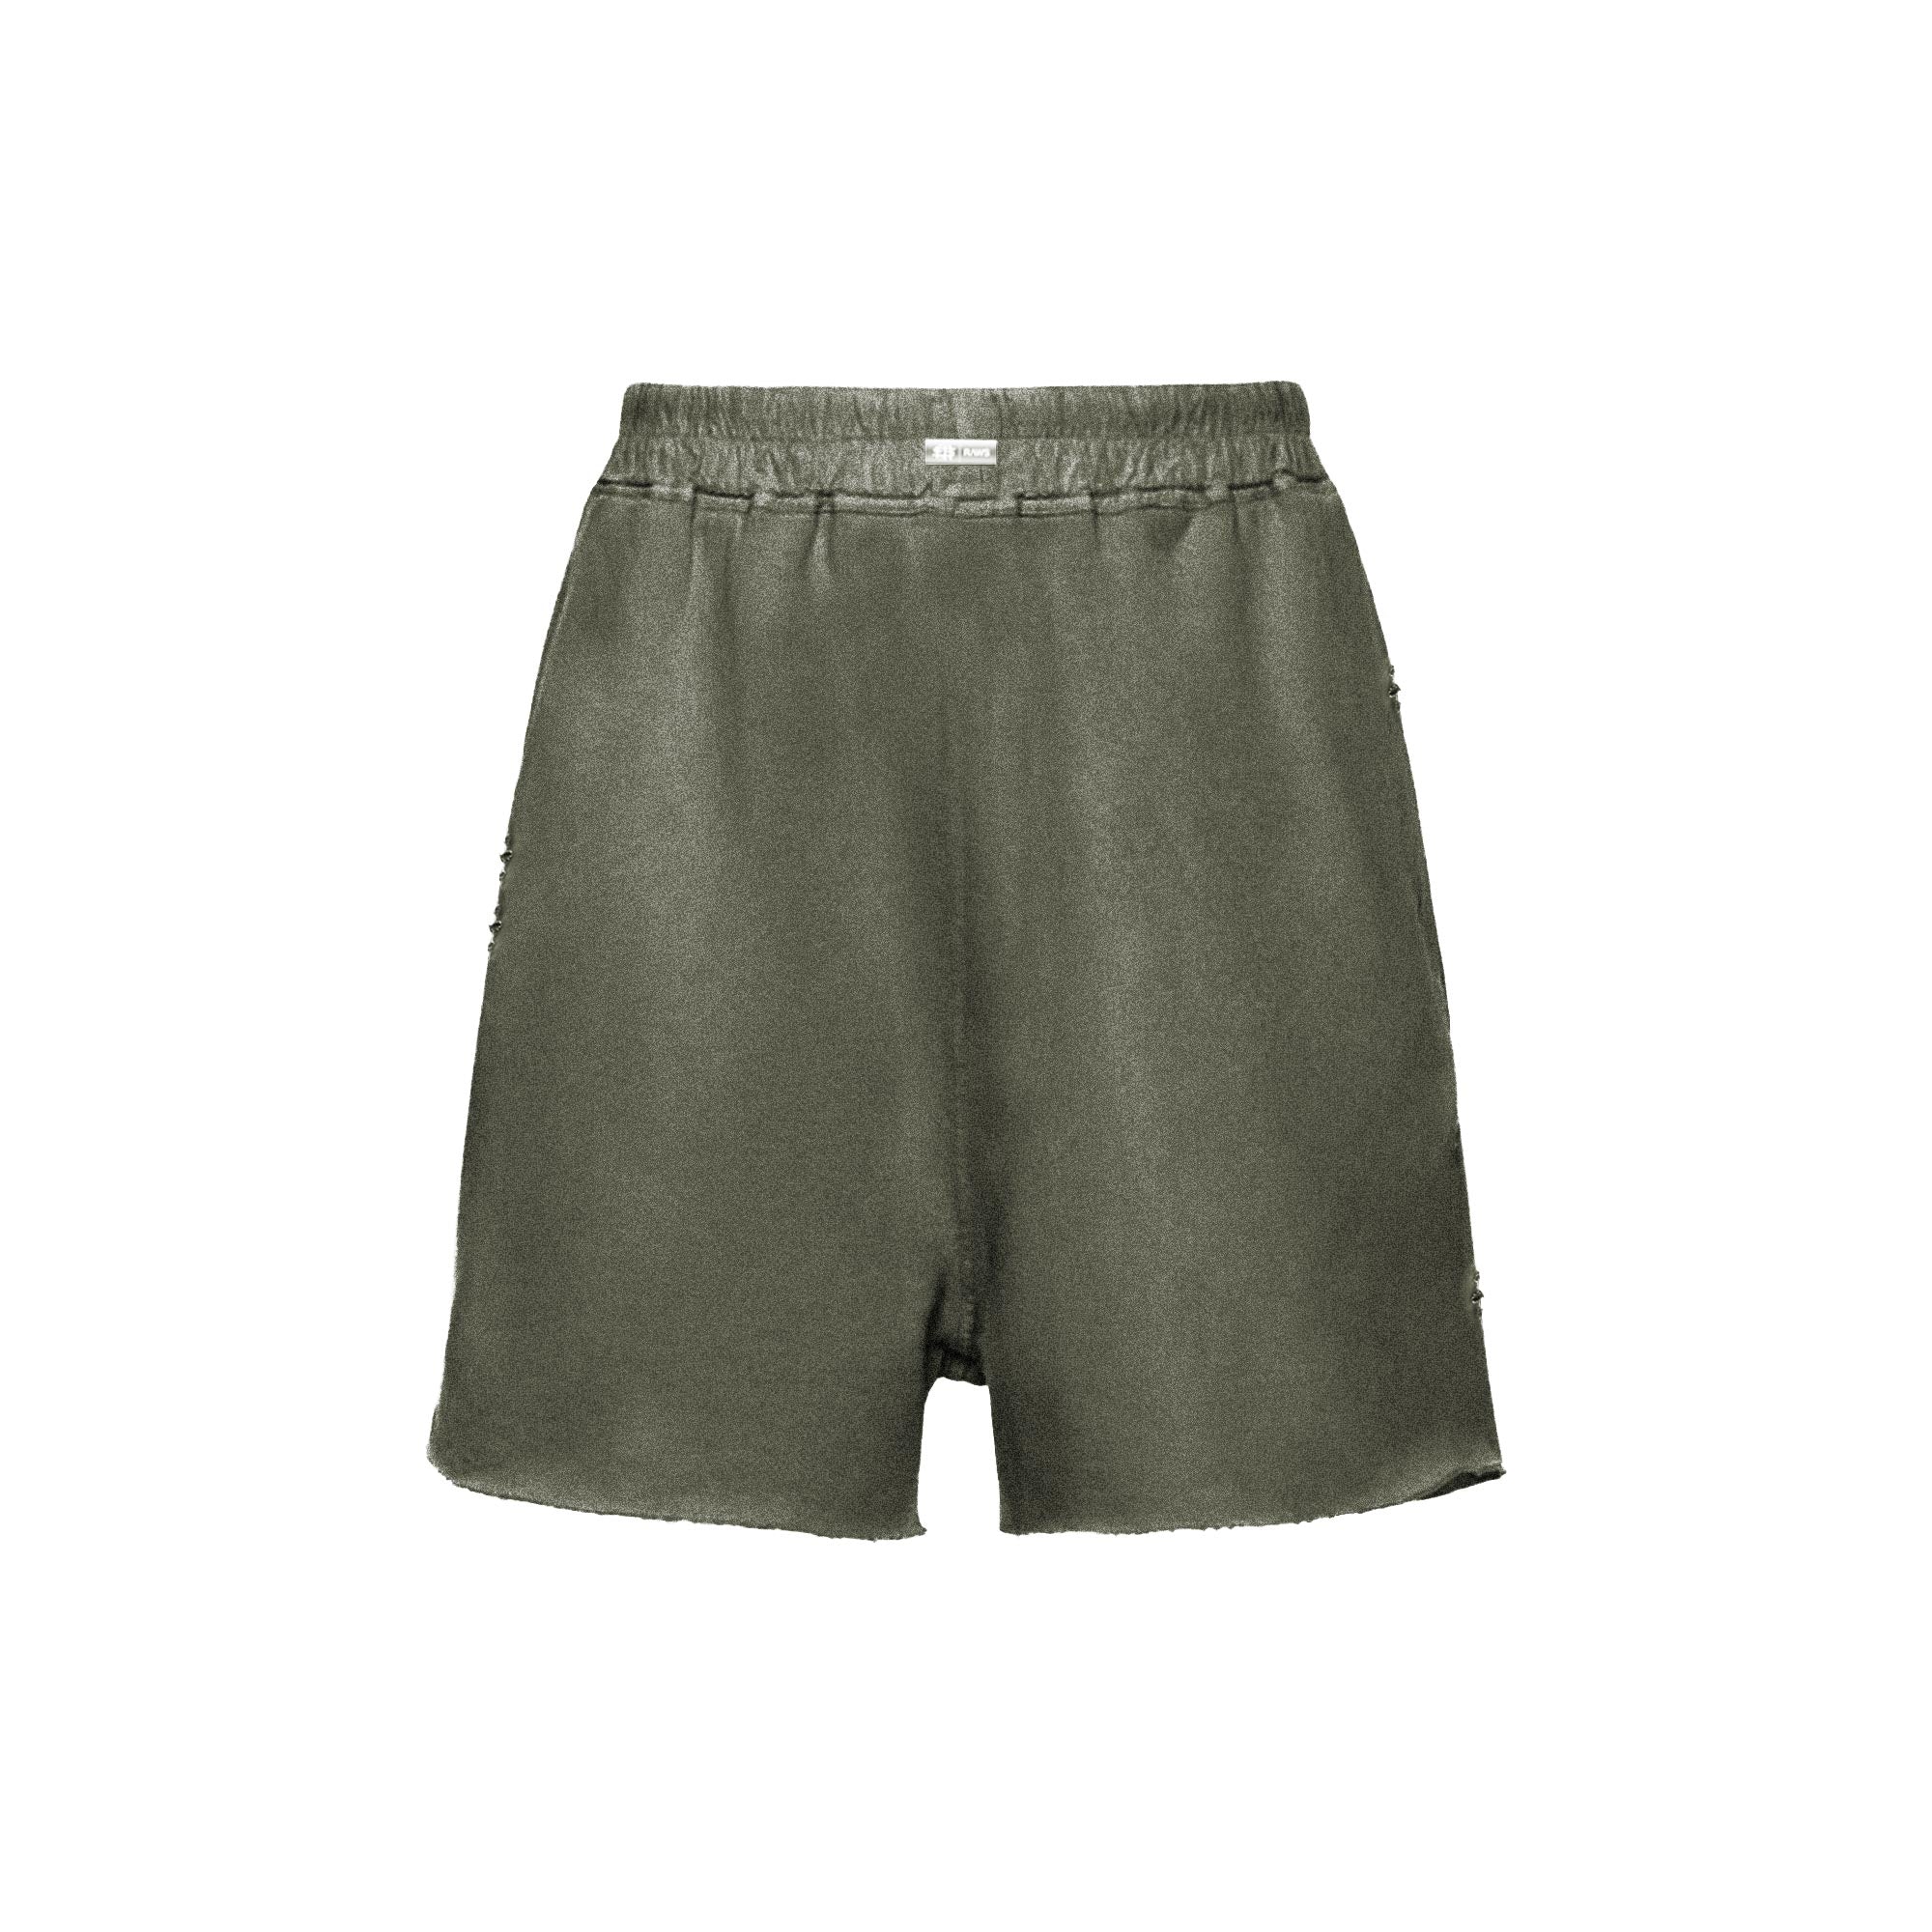 Sole et. Al RAWS Pantalones cortos de peso pesado : Caqui Verde